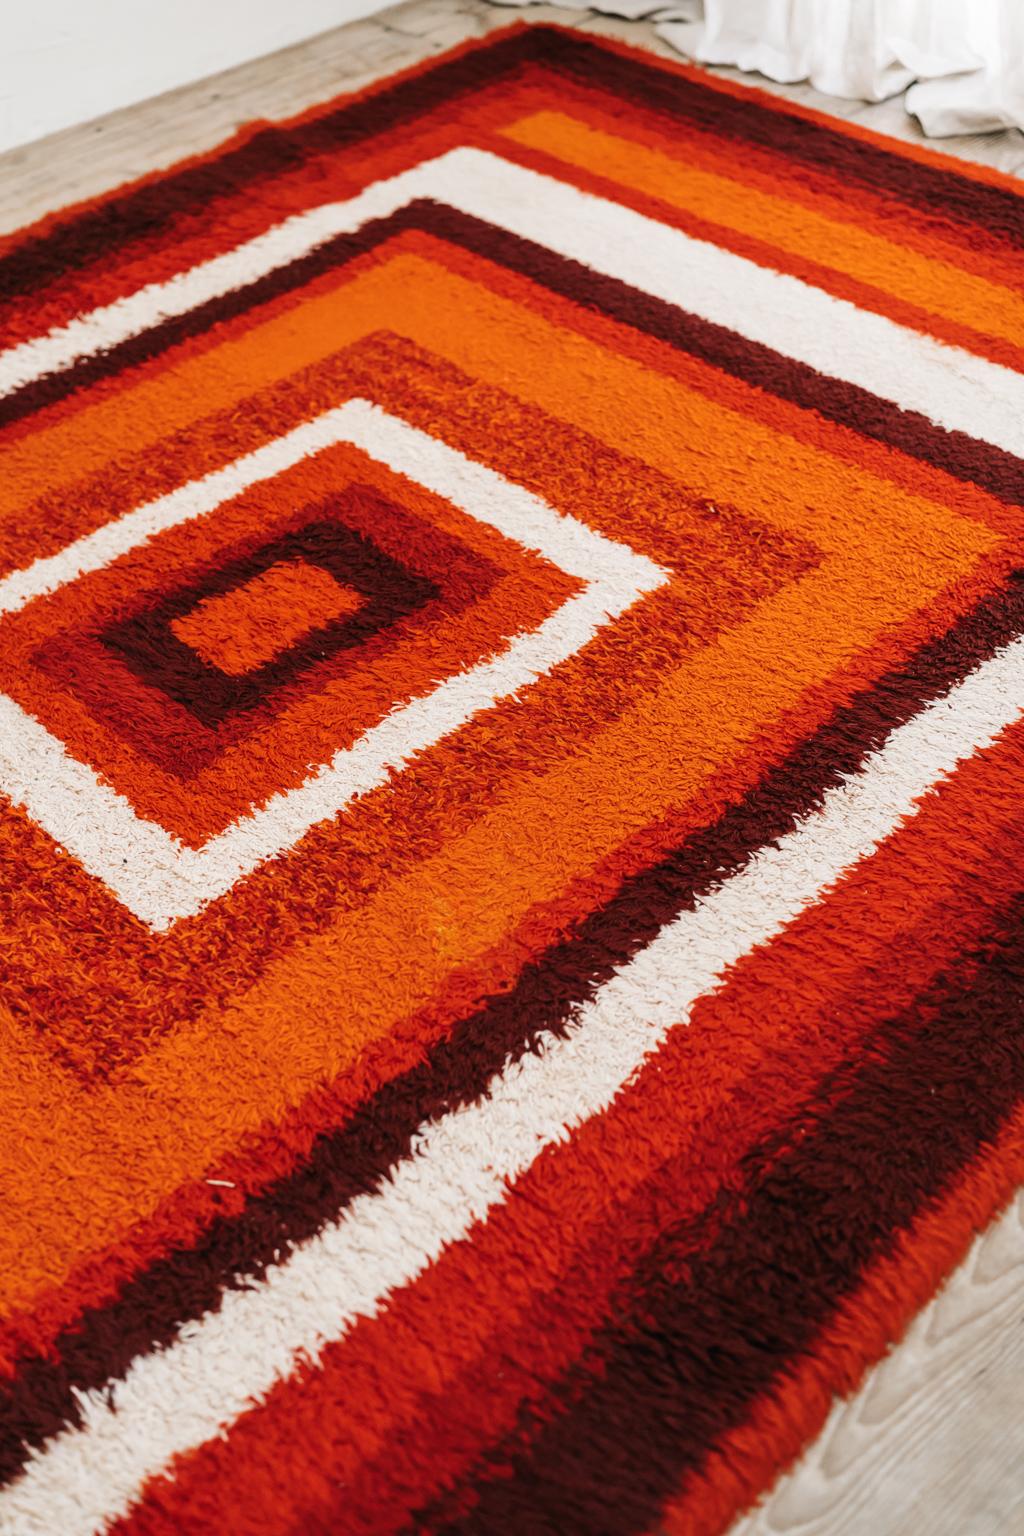 1970s carpet